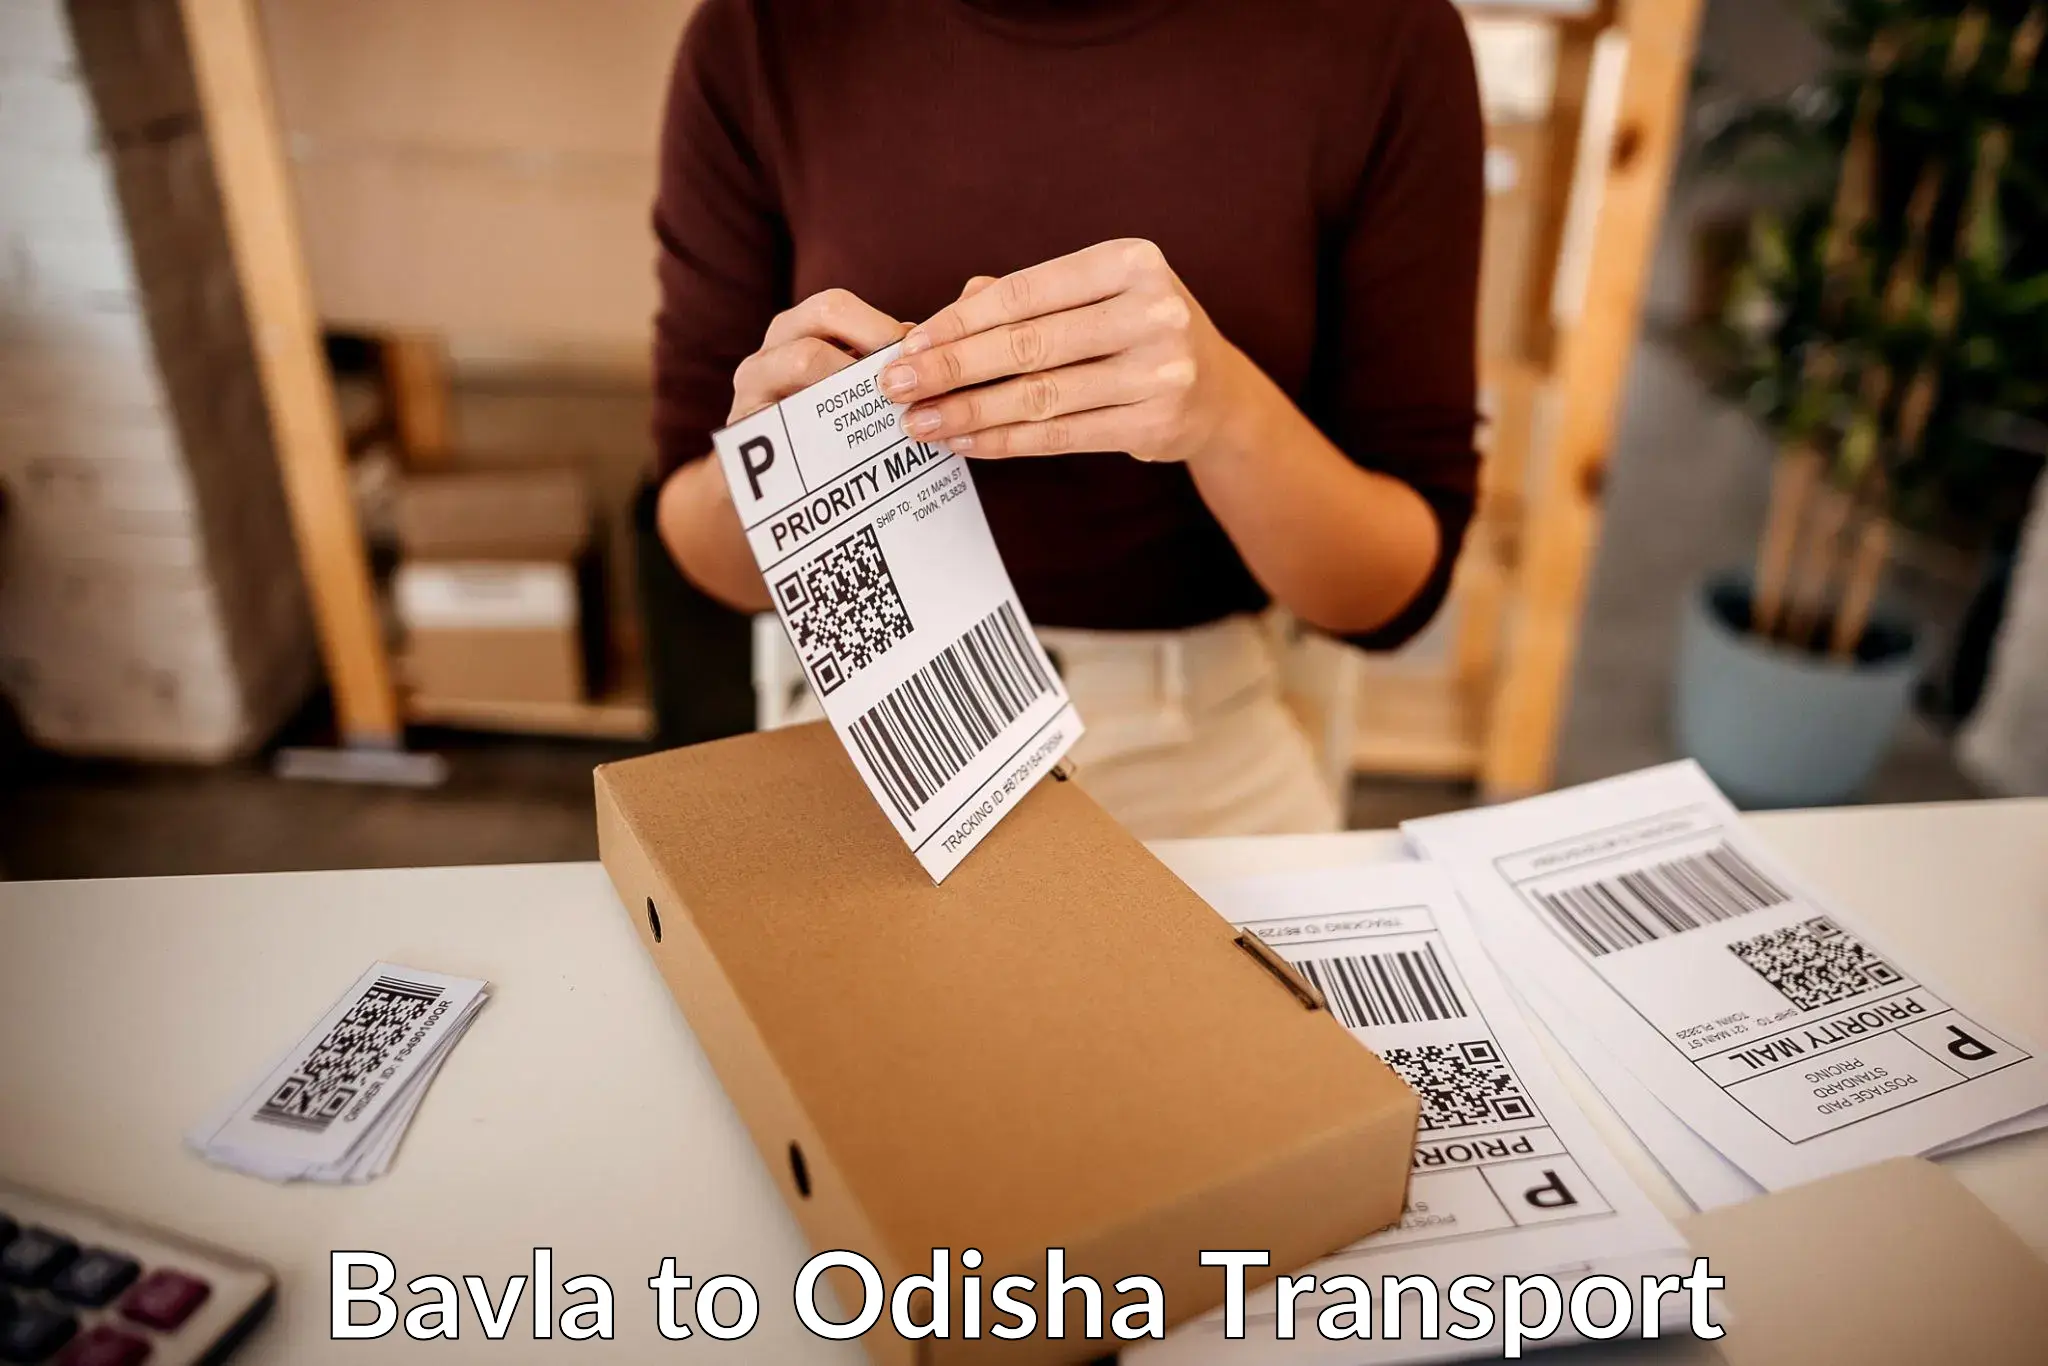 Furniture transport service Bavla to Sundergarh